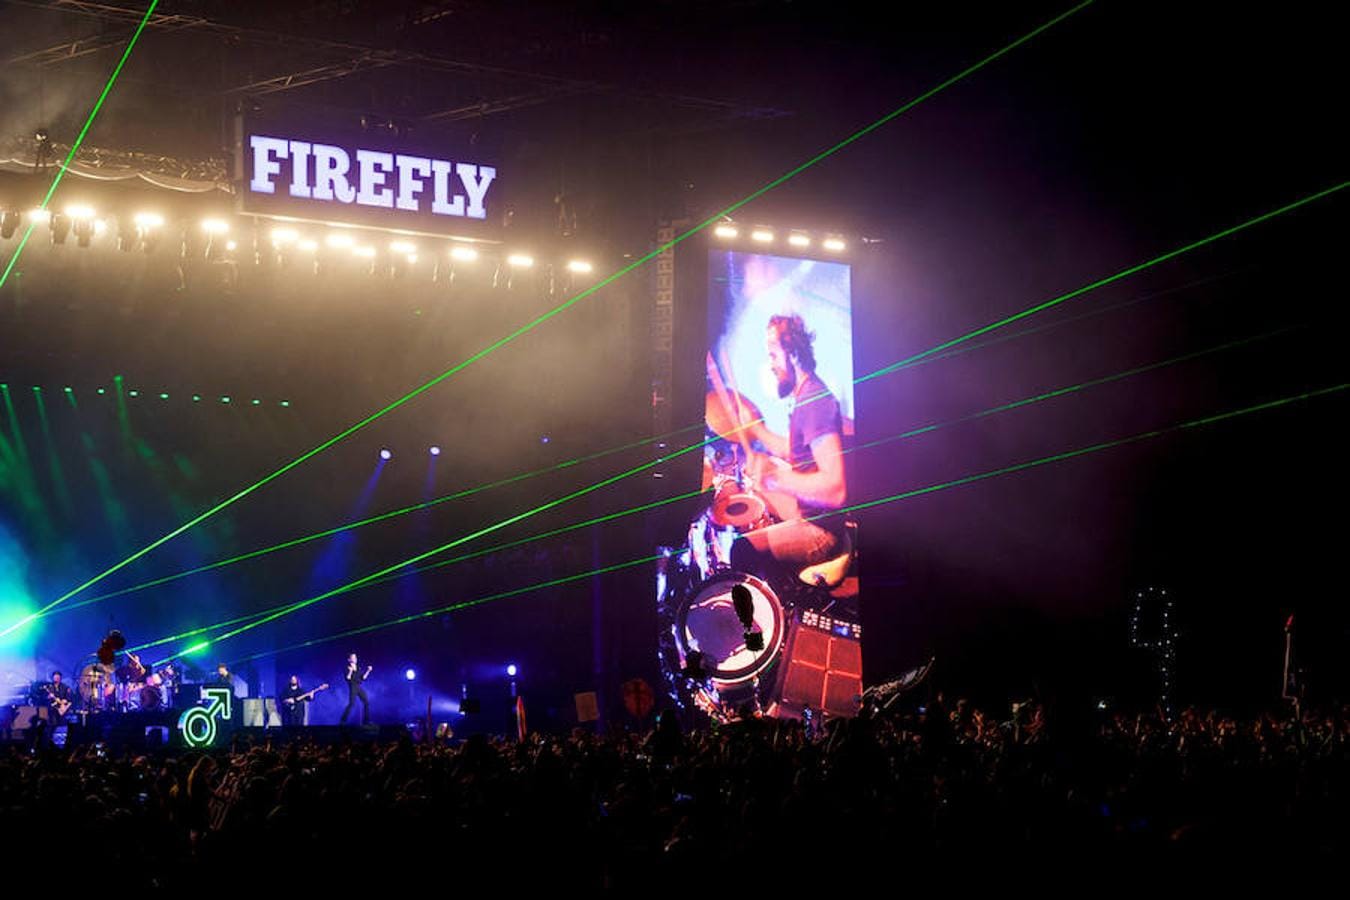 El Firefly Music es un festival de música multigénero que se celebra en Dover, Estados Unidos. Todos los años desde 2012 reúne un cartel que incluye los nombres más importantes de la música, por lo que está considerado como uno de los mejores de Norteamérica. Se celebra en el idílico bosque de Delaware y, según algunos, es mucho más que un típico festival de música, puede decirse que es una verdadera ciudad temporal donde se celebran varias disciplinas artísticas y pueden encontrarse además mercados y hasta su propia fábrica de cerveza. Este año se ha celebrado la séptima edición, que concluyó el domingo.